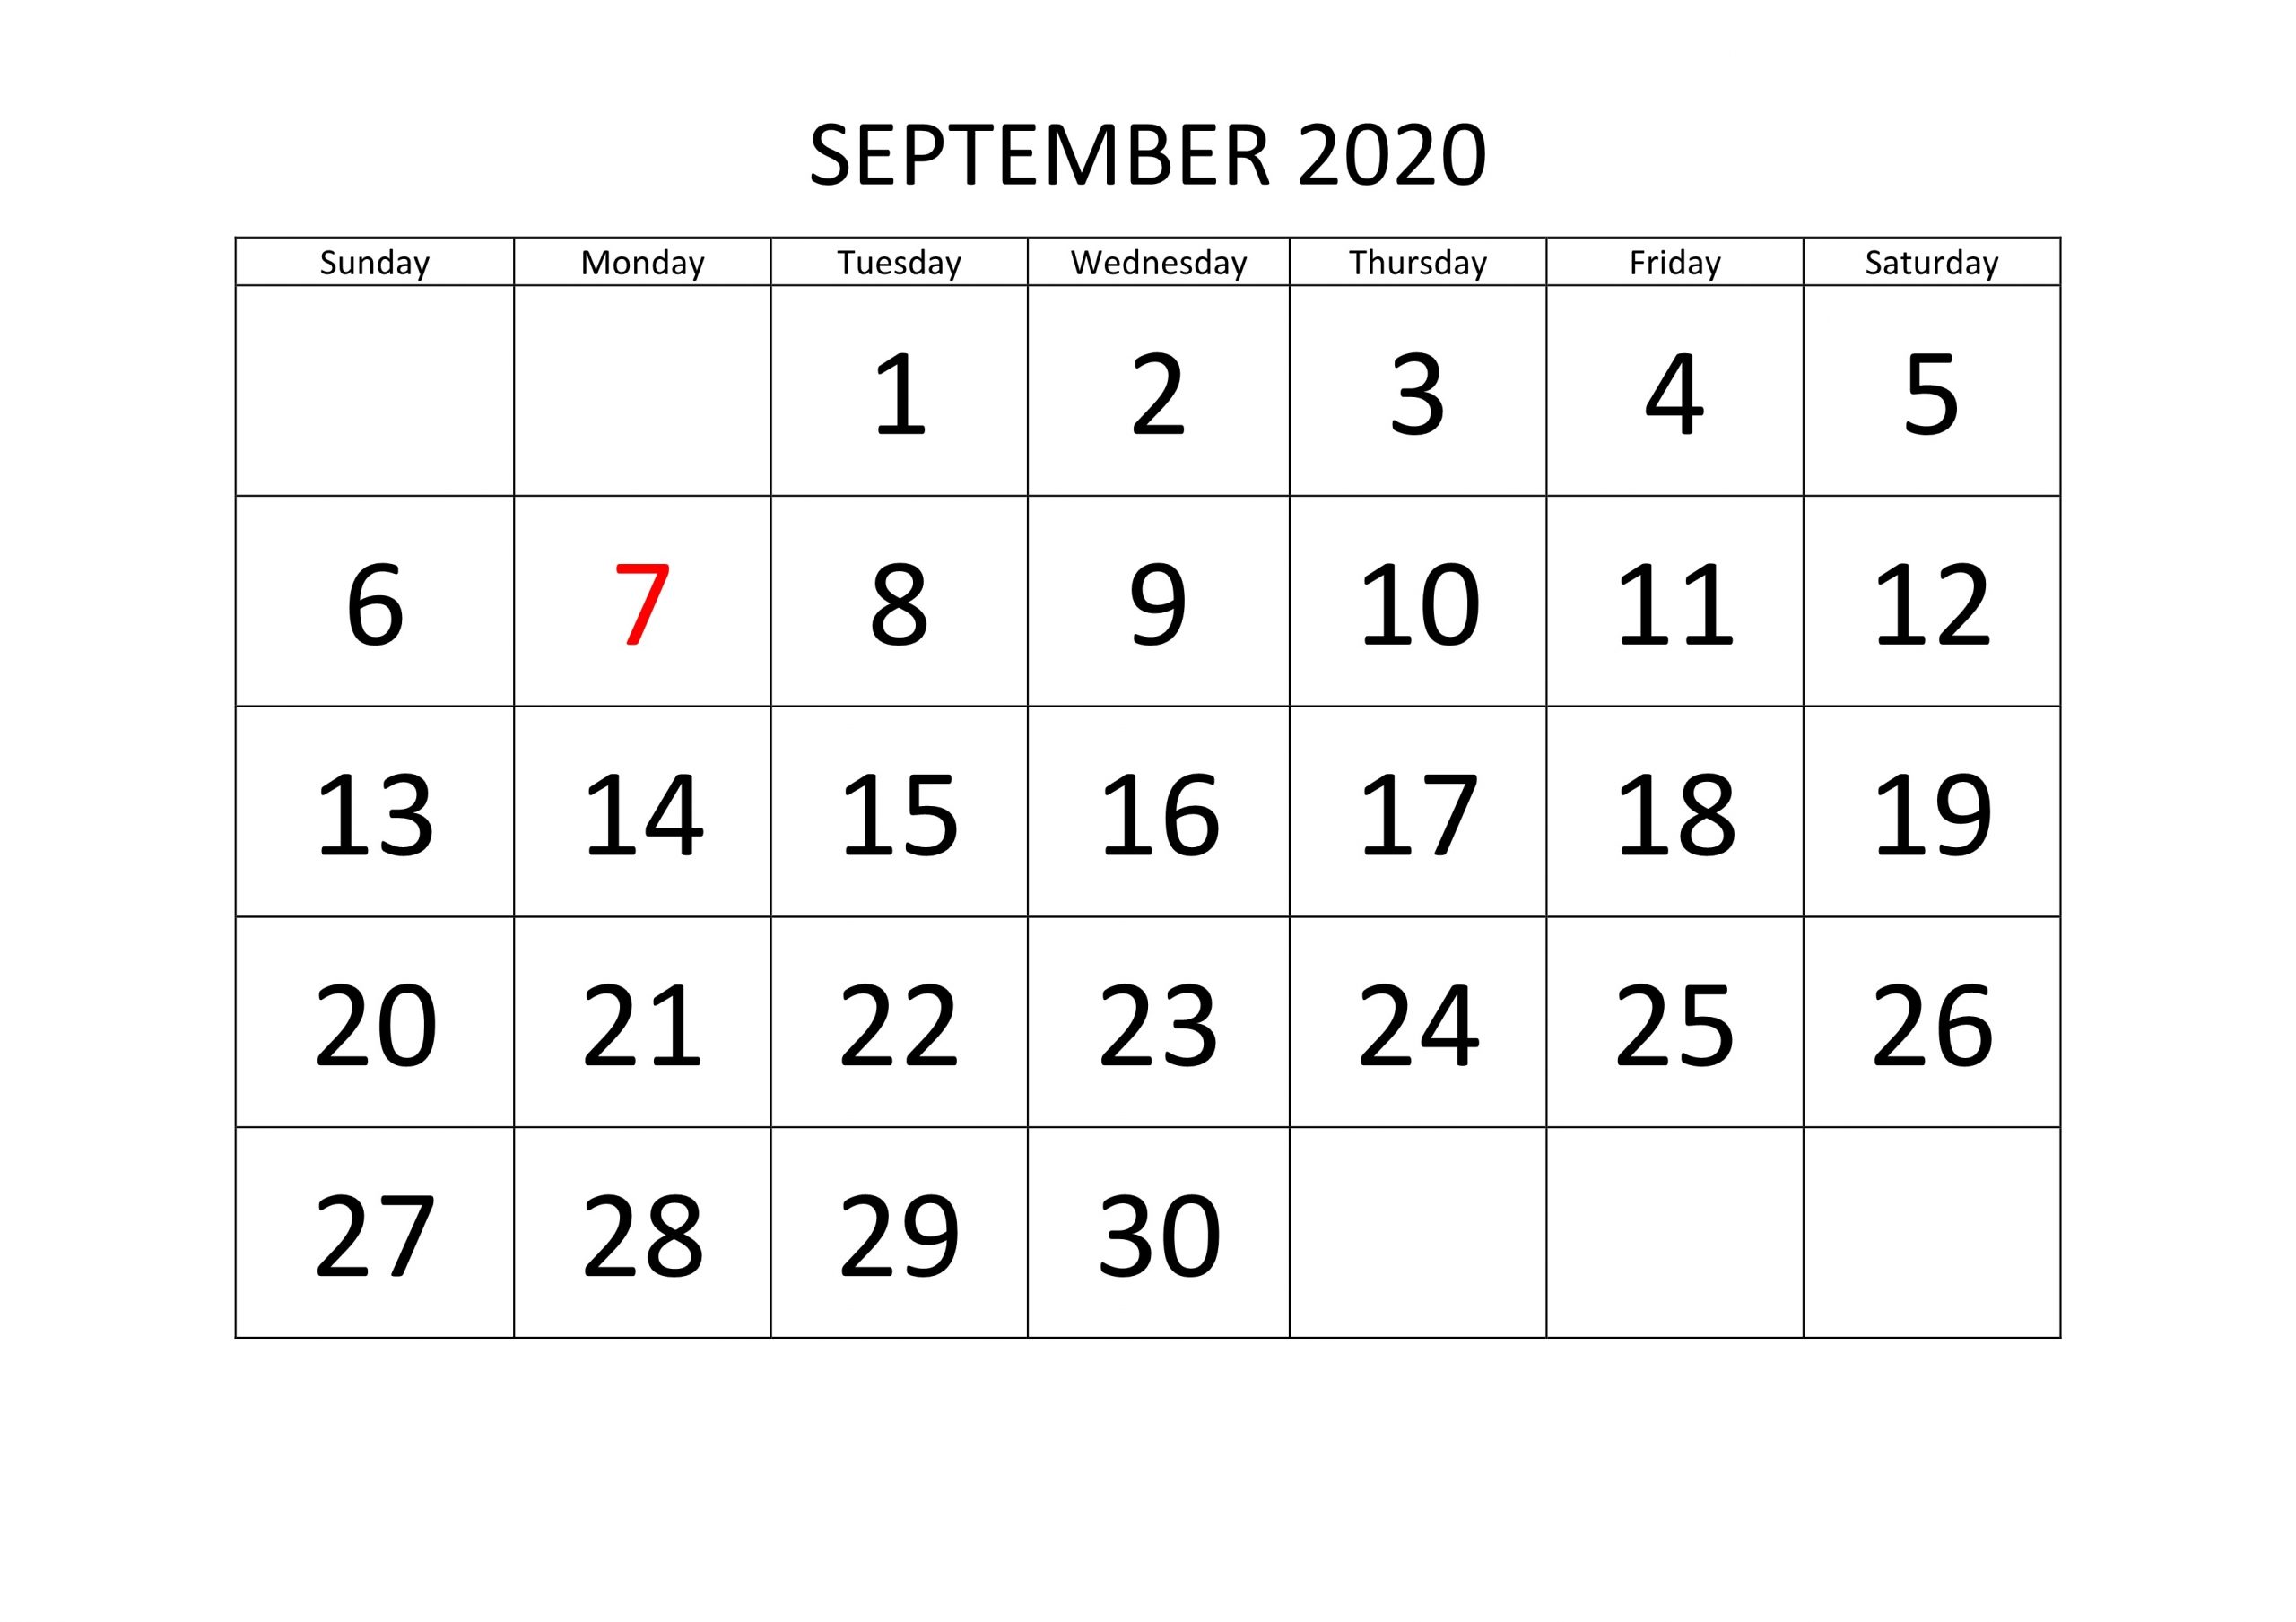 September 2020 Calendar Template